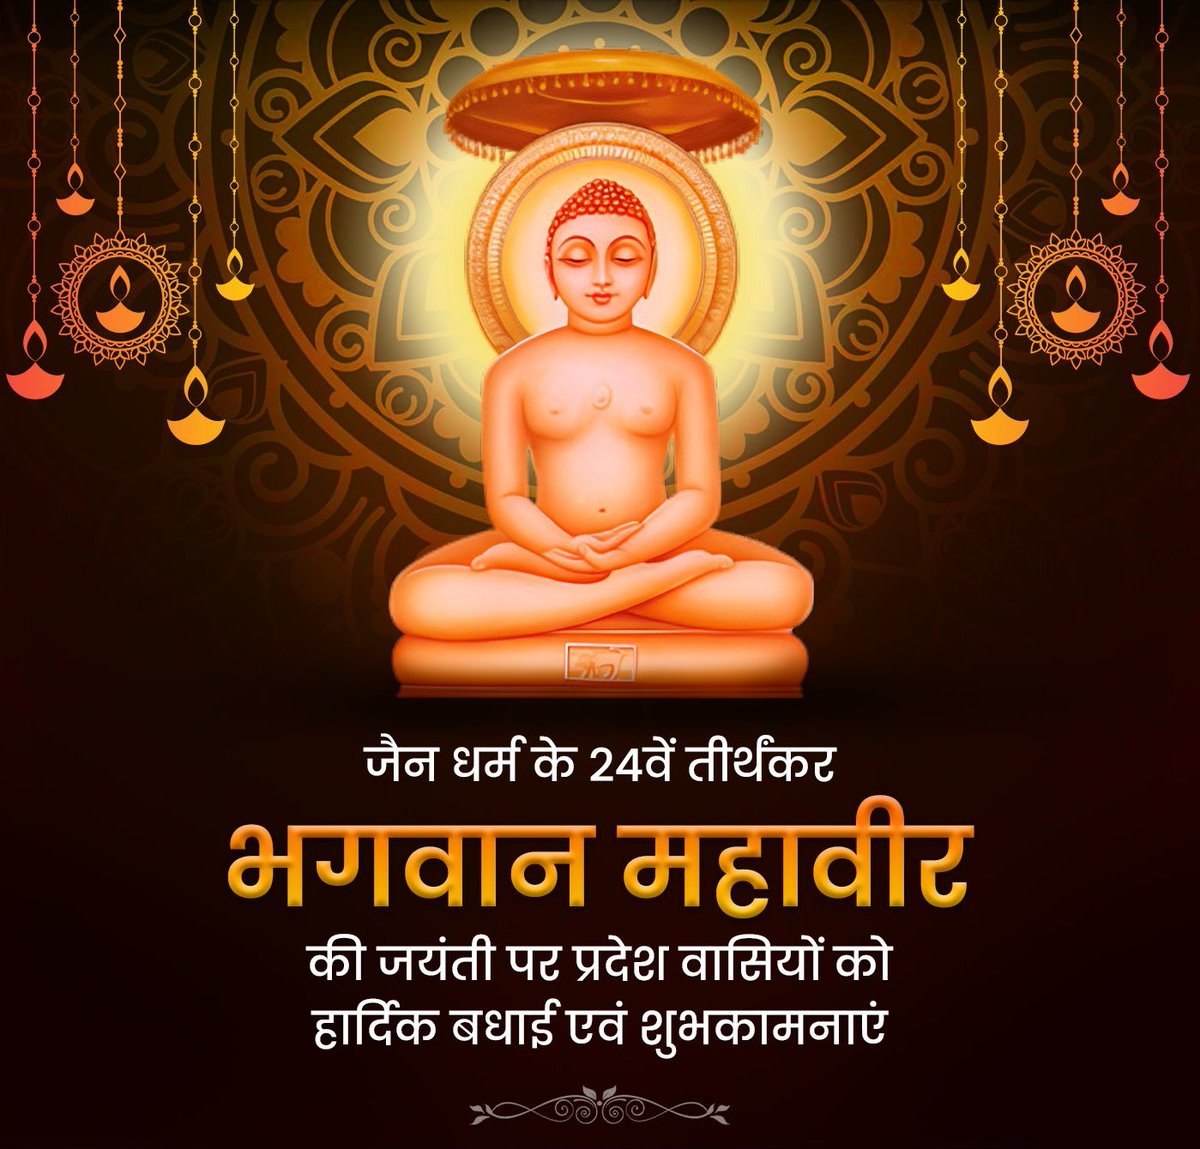 पूरे विश्व को सत्य,अहिंसा और त्याग की शिक्षा देने वाले जैन धर्म के संस्थापक भगवान महावीर जयंती पर आप सभी को हार्दिक शुभकामनायें। #MahavirJayanti